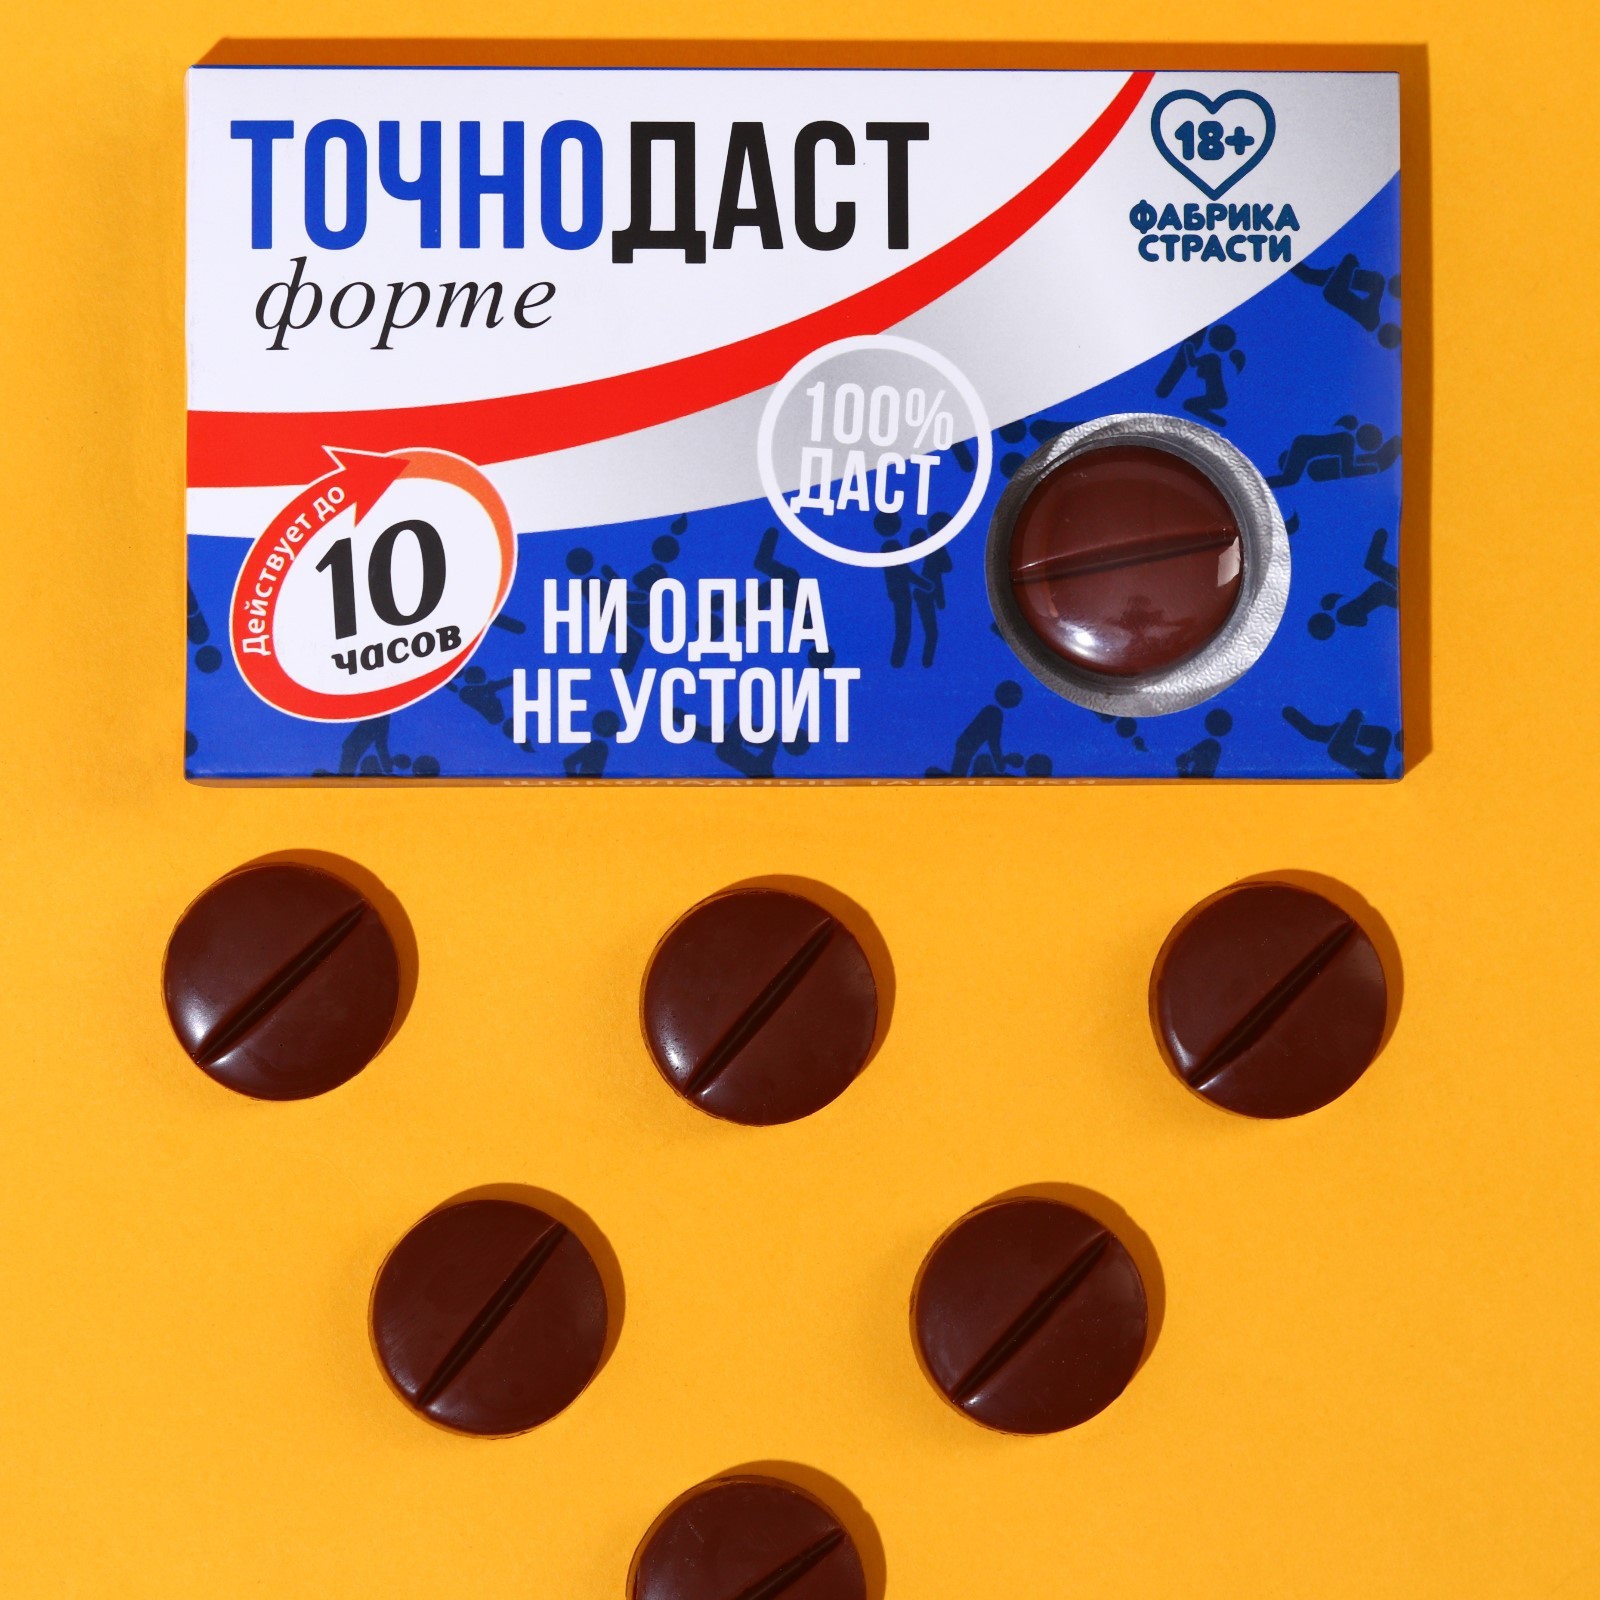  	УЦЕНКА 60%!Шоколадные таблетки ТОЧНОДАСТ, 24 гр (выходят сроки)